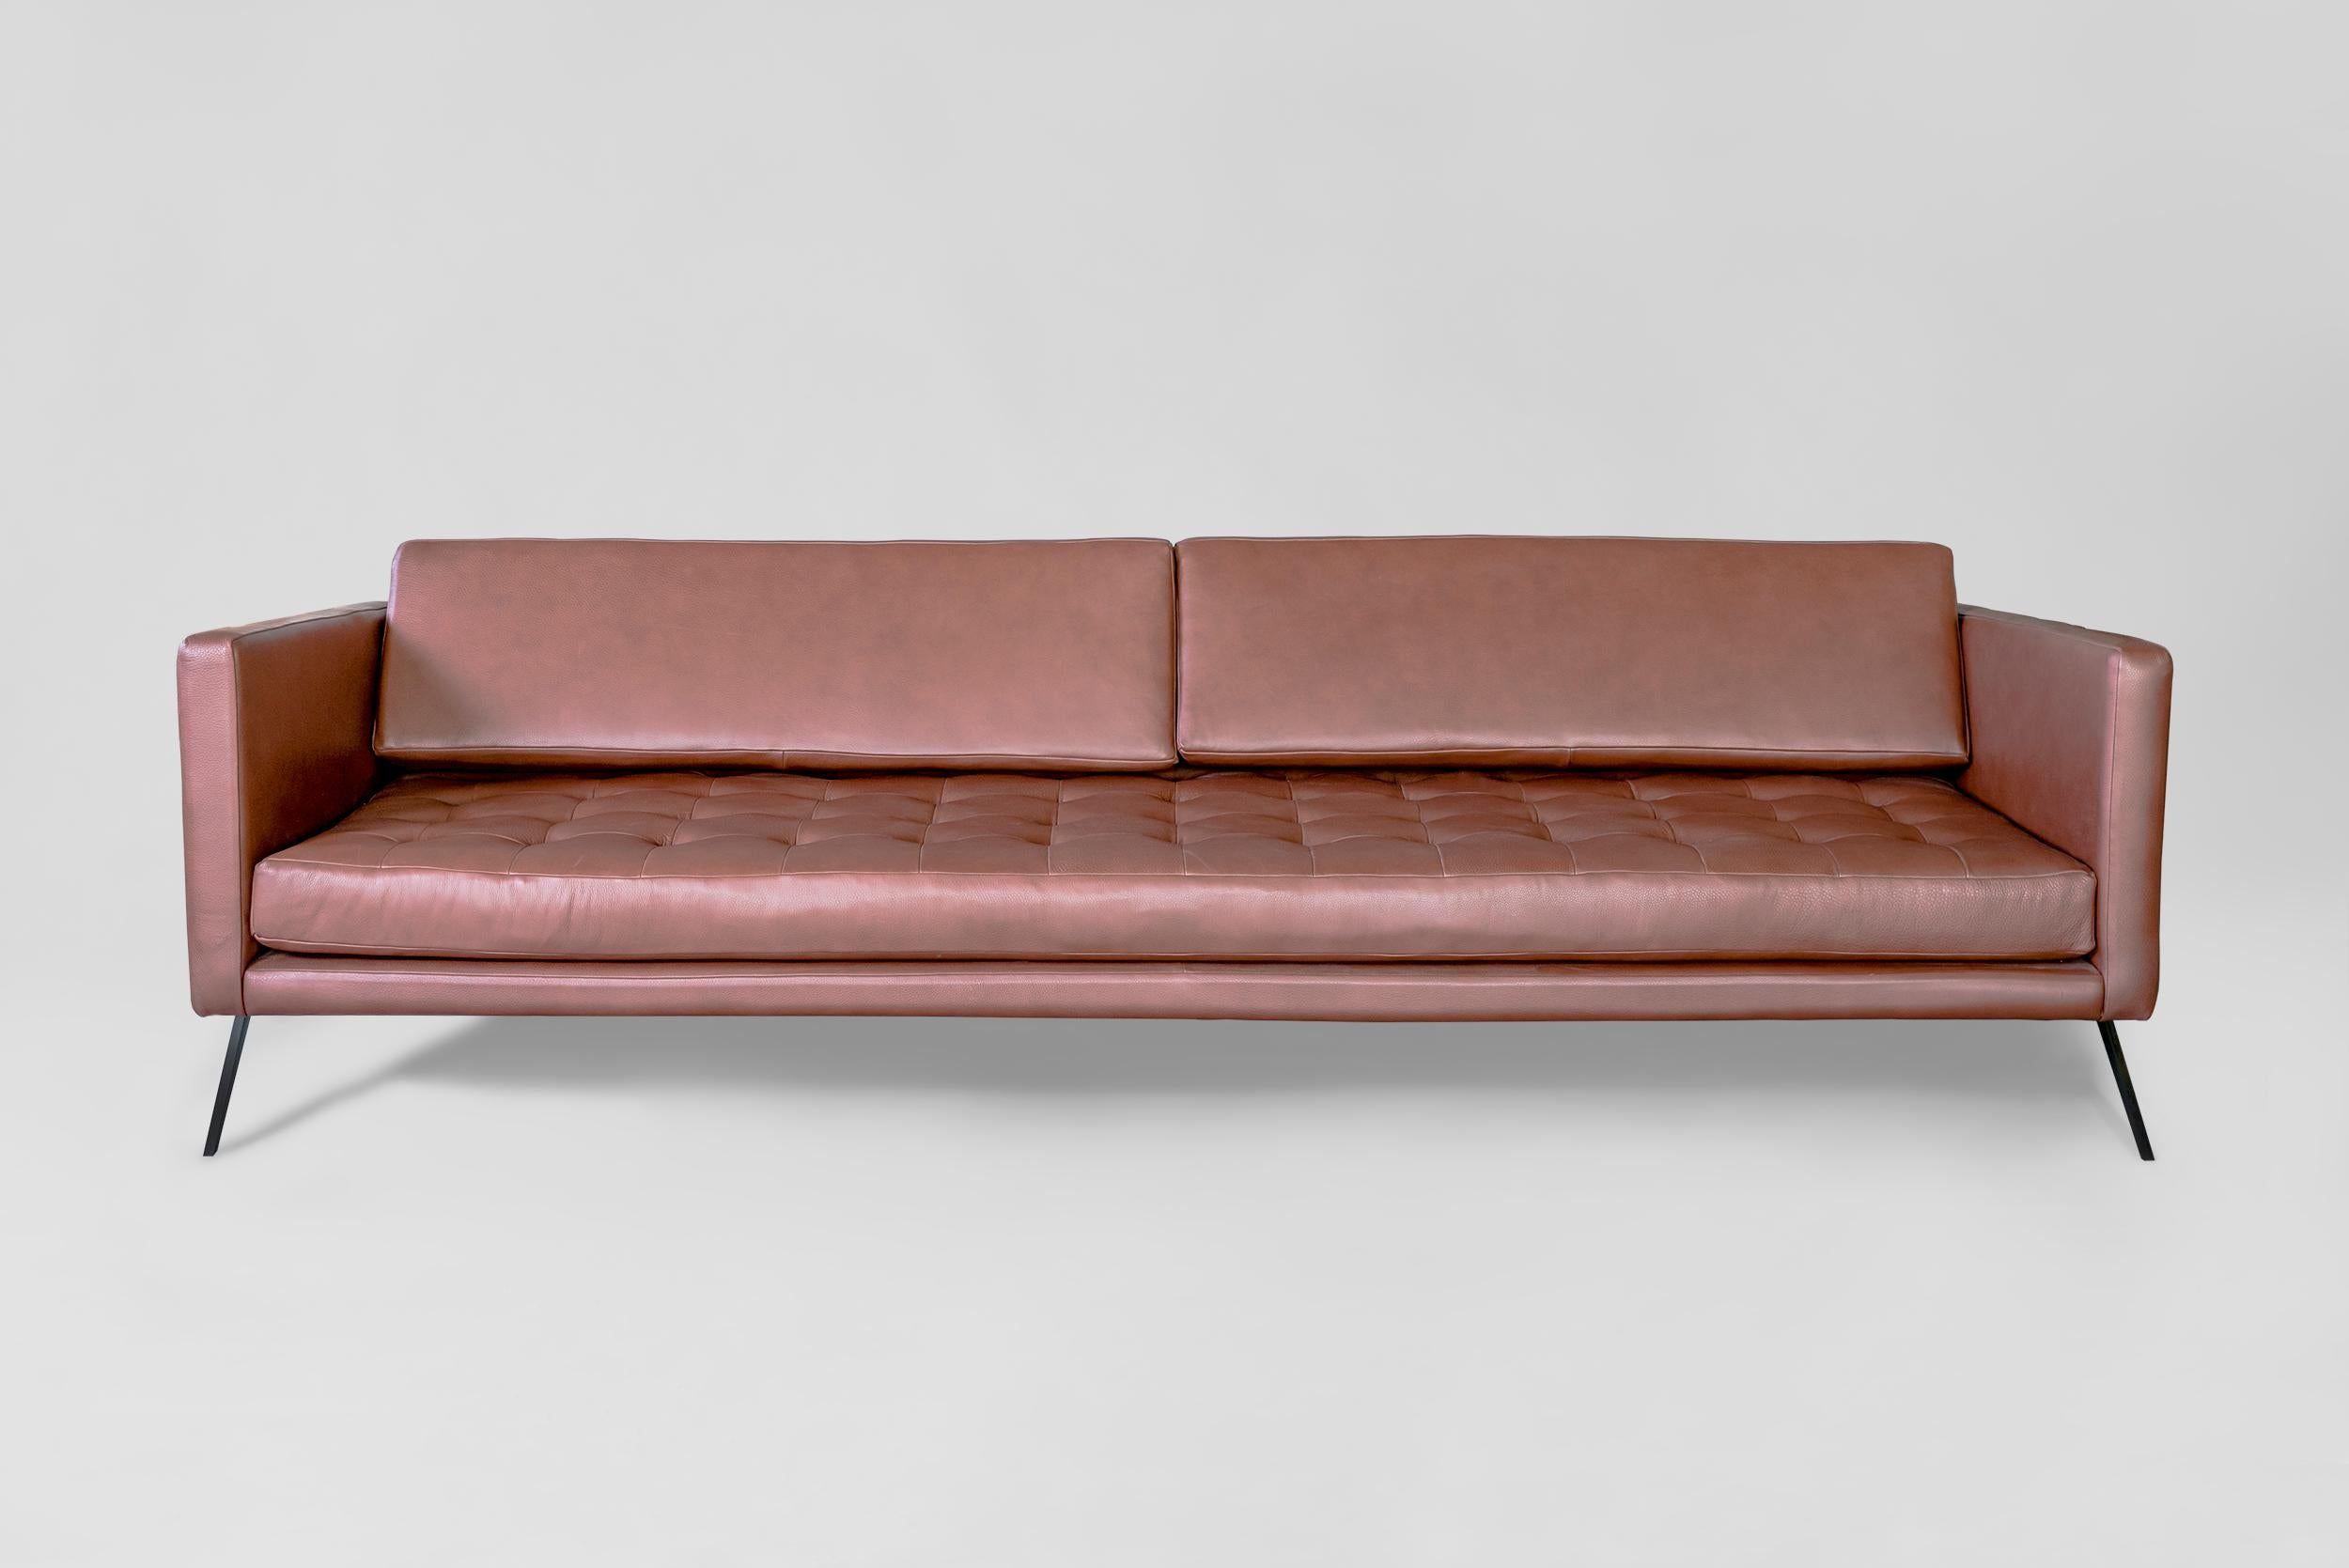 Canapé Mantis d'Atra Design
Dimensions : D 240 x L 92 x H 74 cm
MATERIAUX : cuir, acier
Disponible en cuir ou en tissu.

Atra Design
Nous sommes Atra, une marque de meubles produite par Atra form A, un site de production haut de gamme basé à Mexico